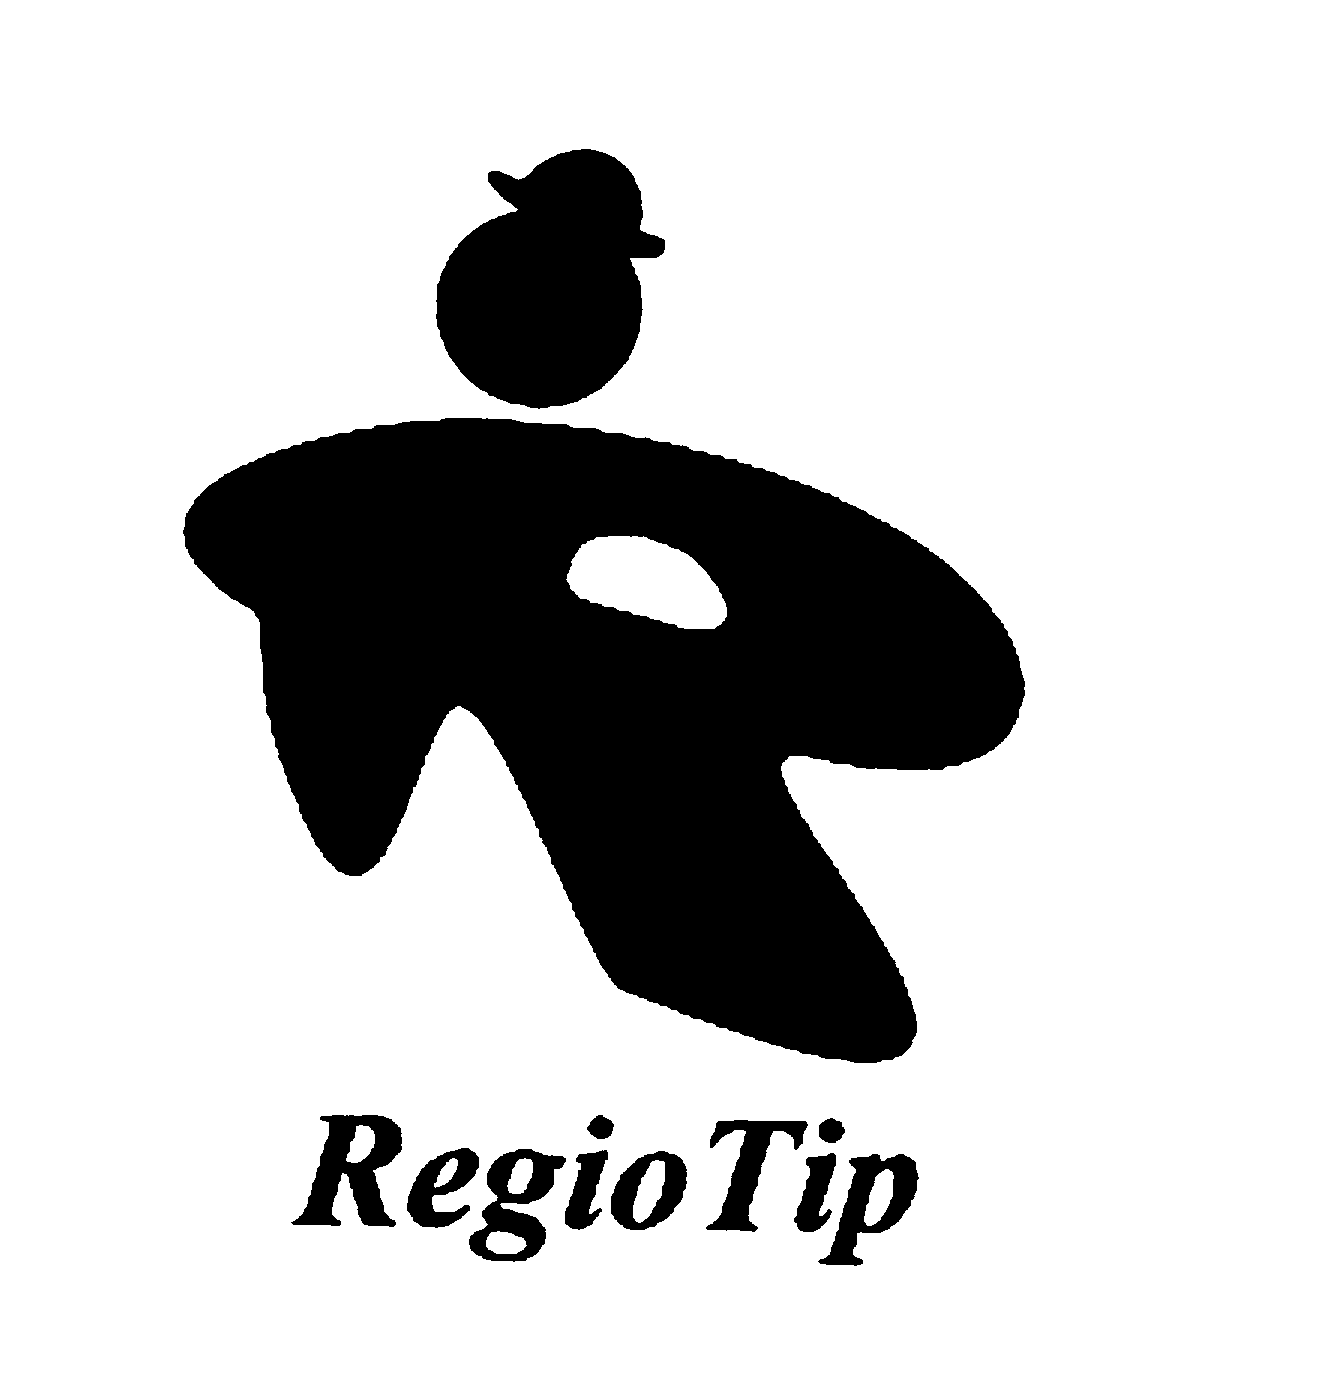  REGIO TIP